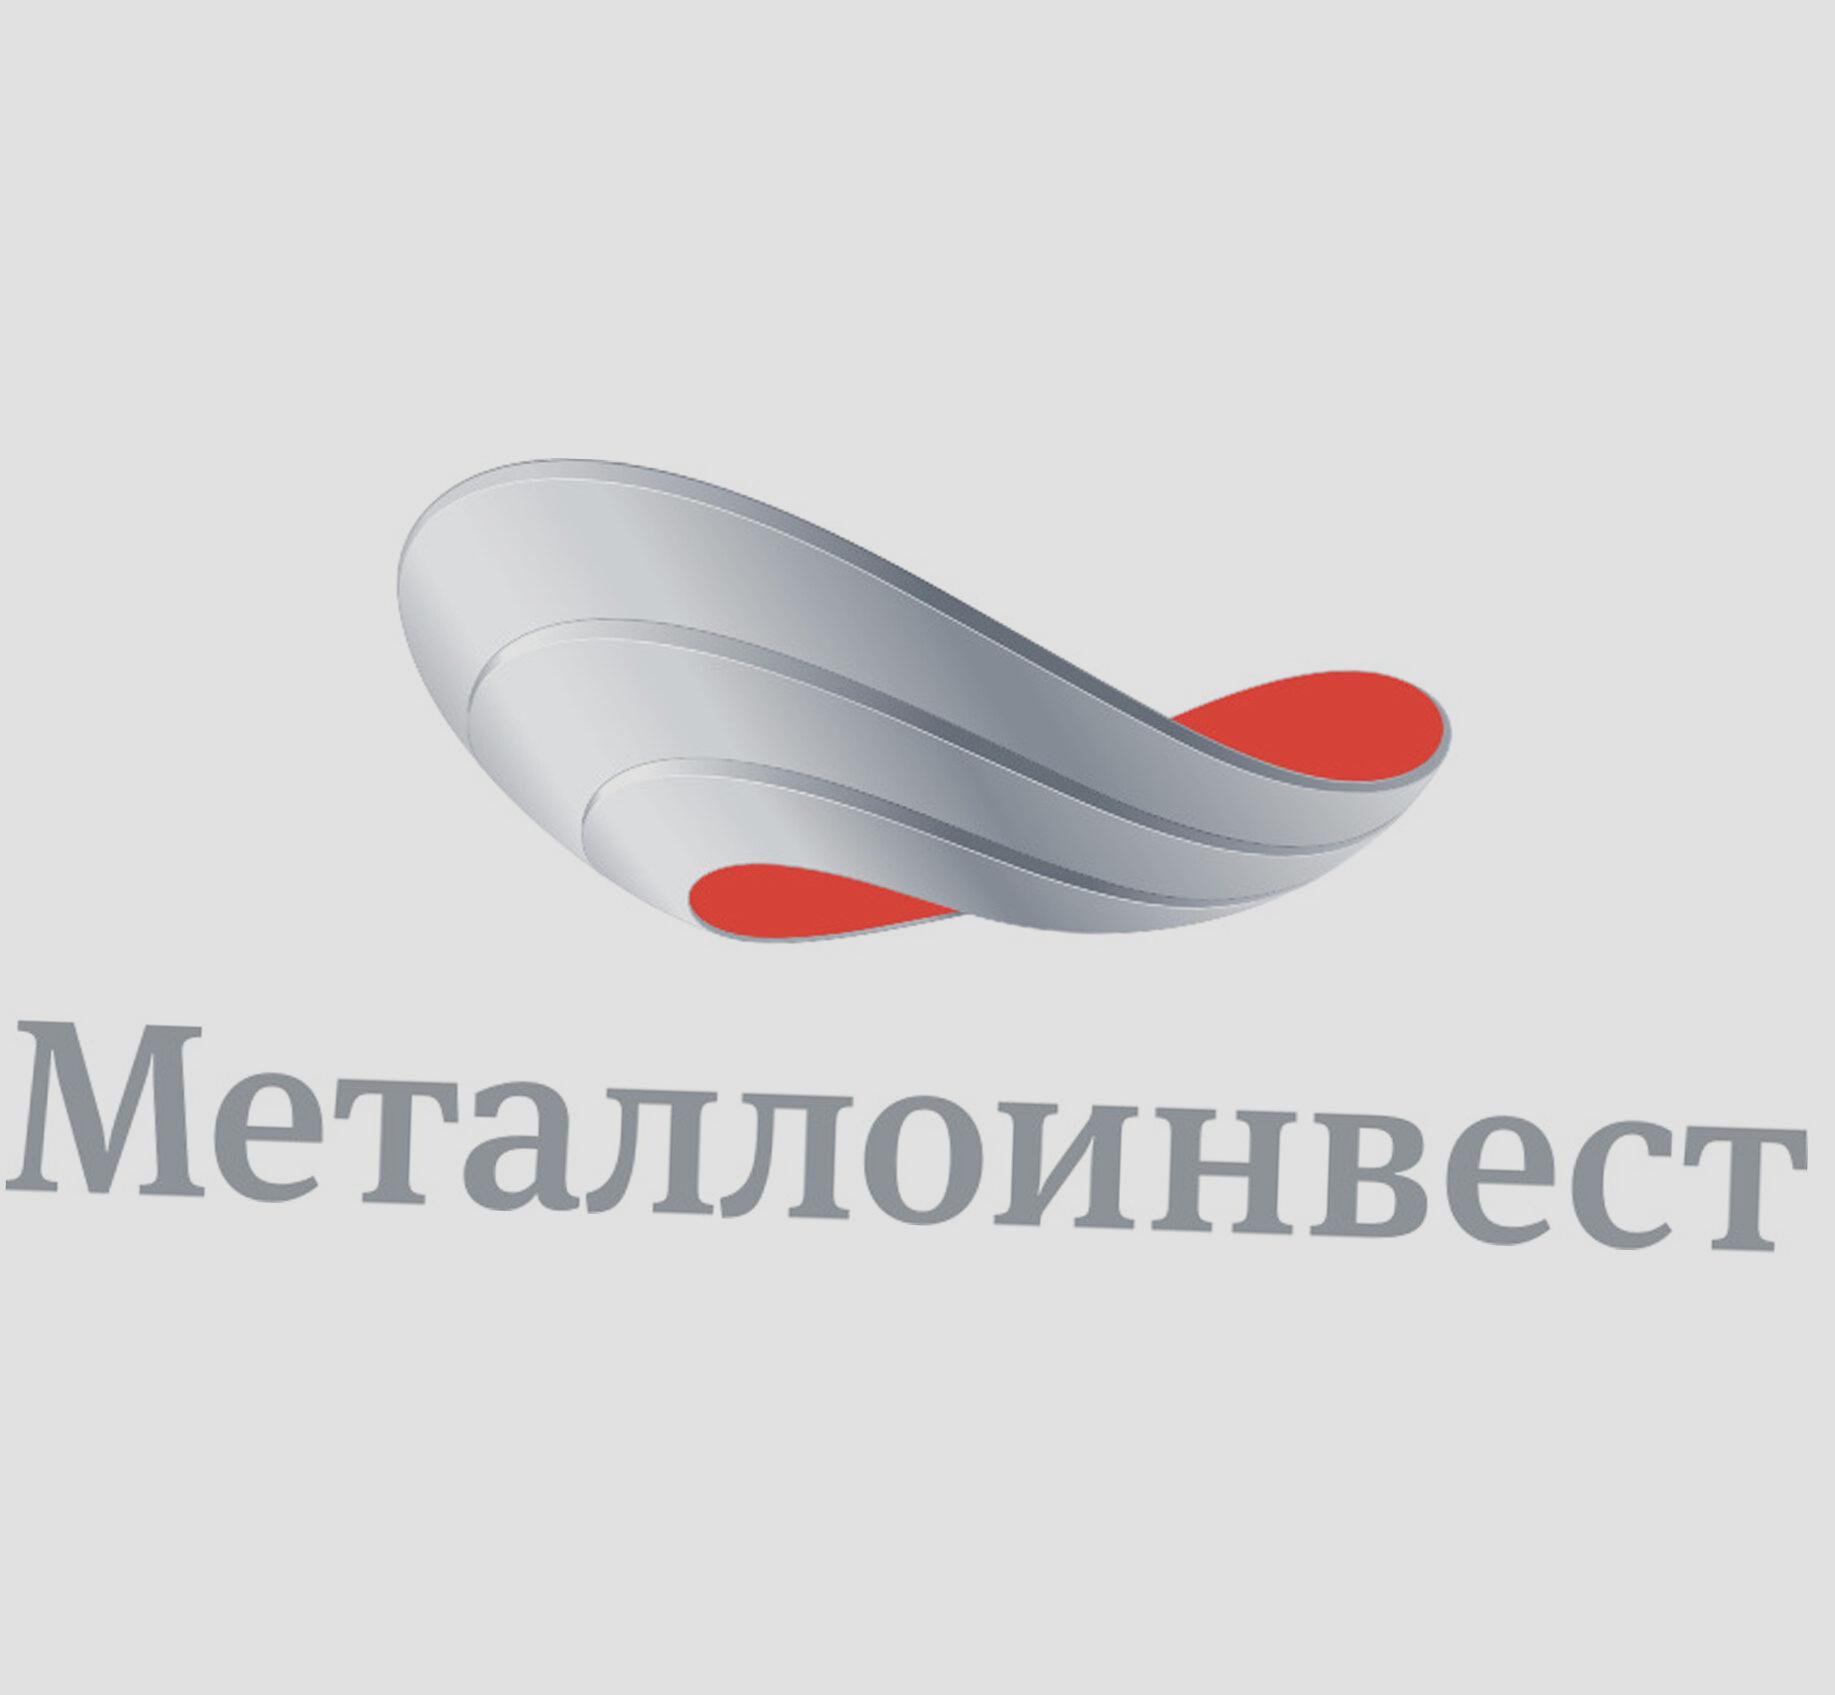 Металлоинвест подтвердил «Золотой» статус в рейтинге лучших работодателей России